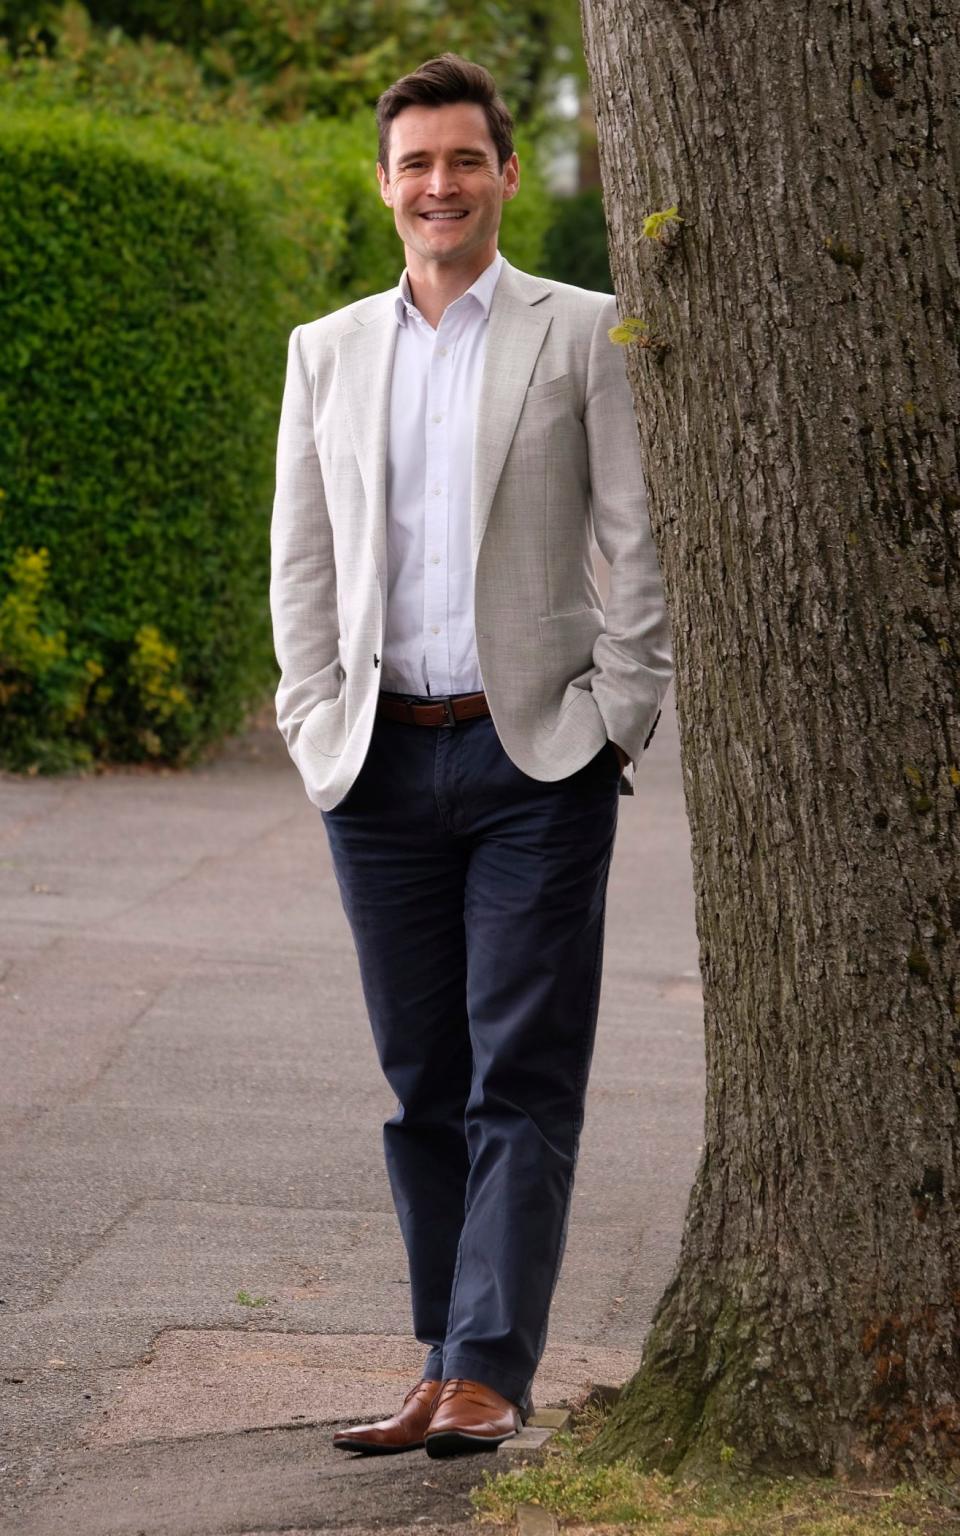 Dr Luke Evans - John Robertson